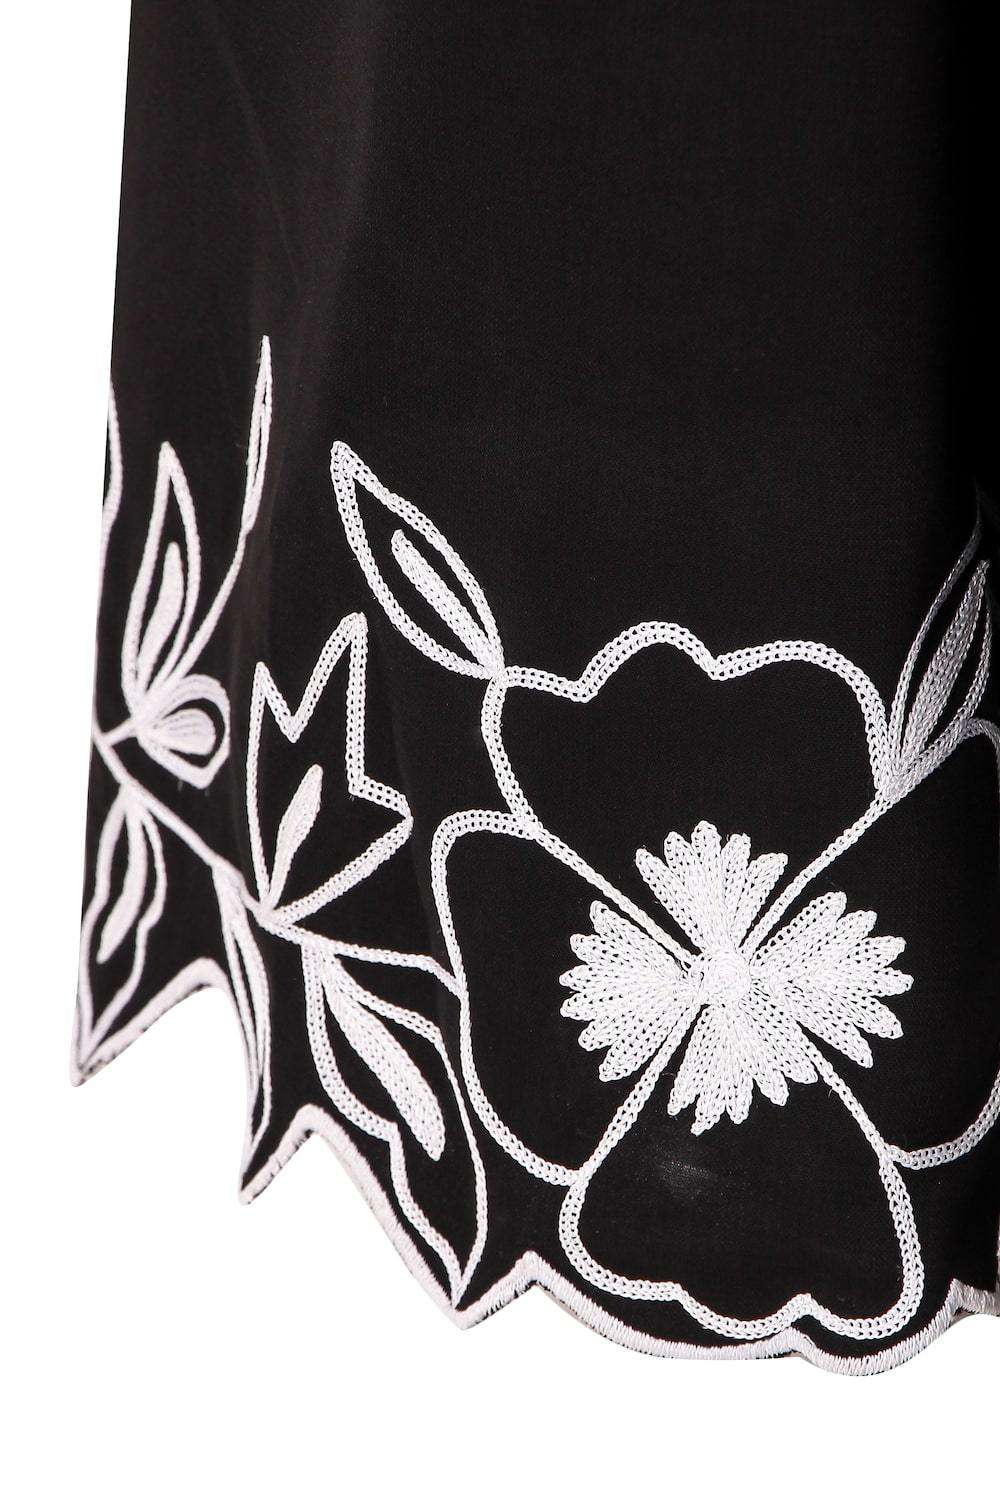 Embellished Scalped Bottom Anarkali Abaya Embroidery